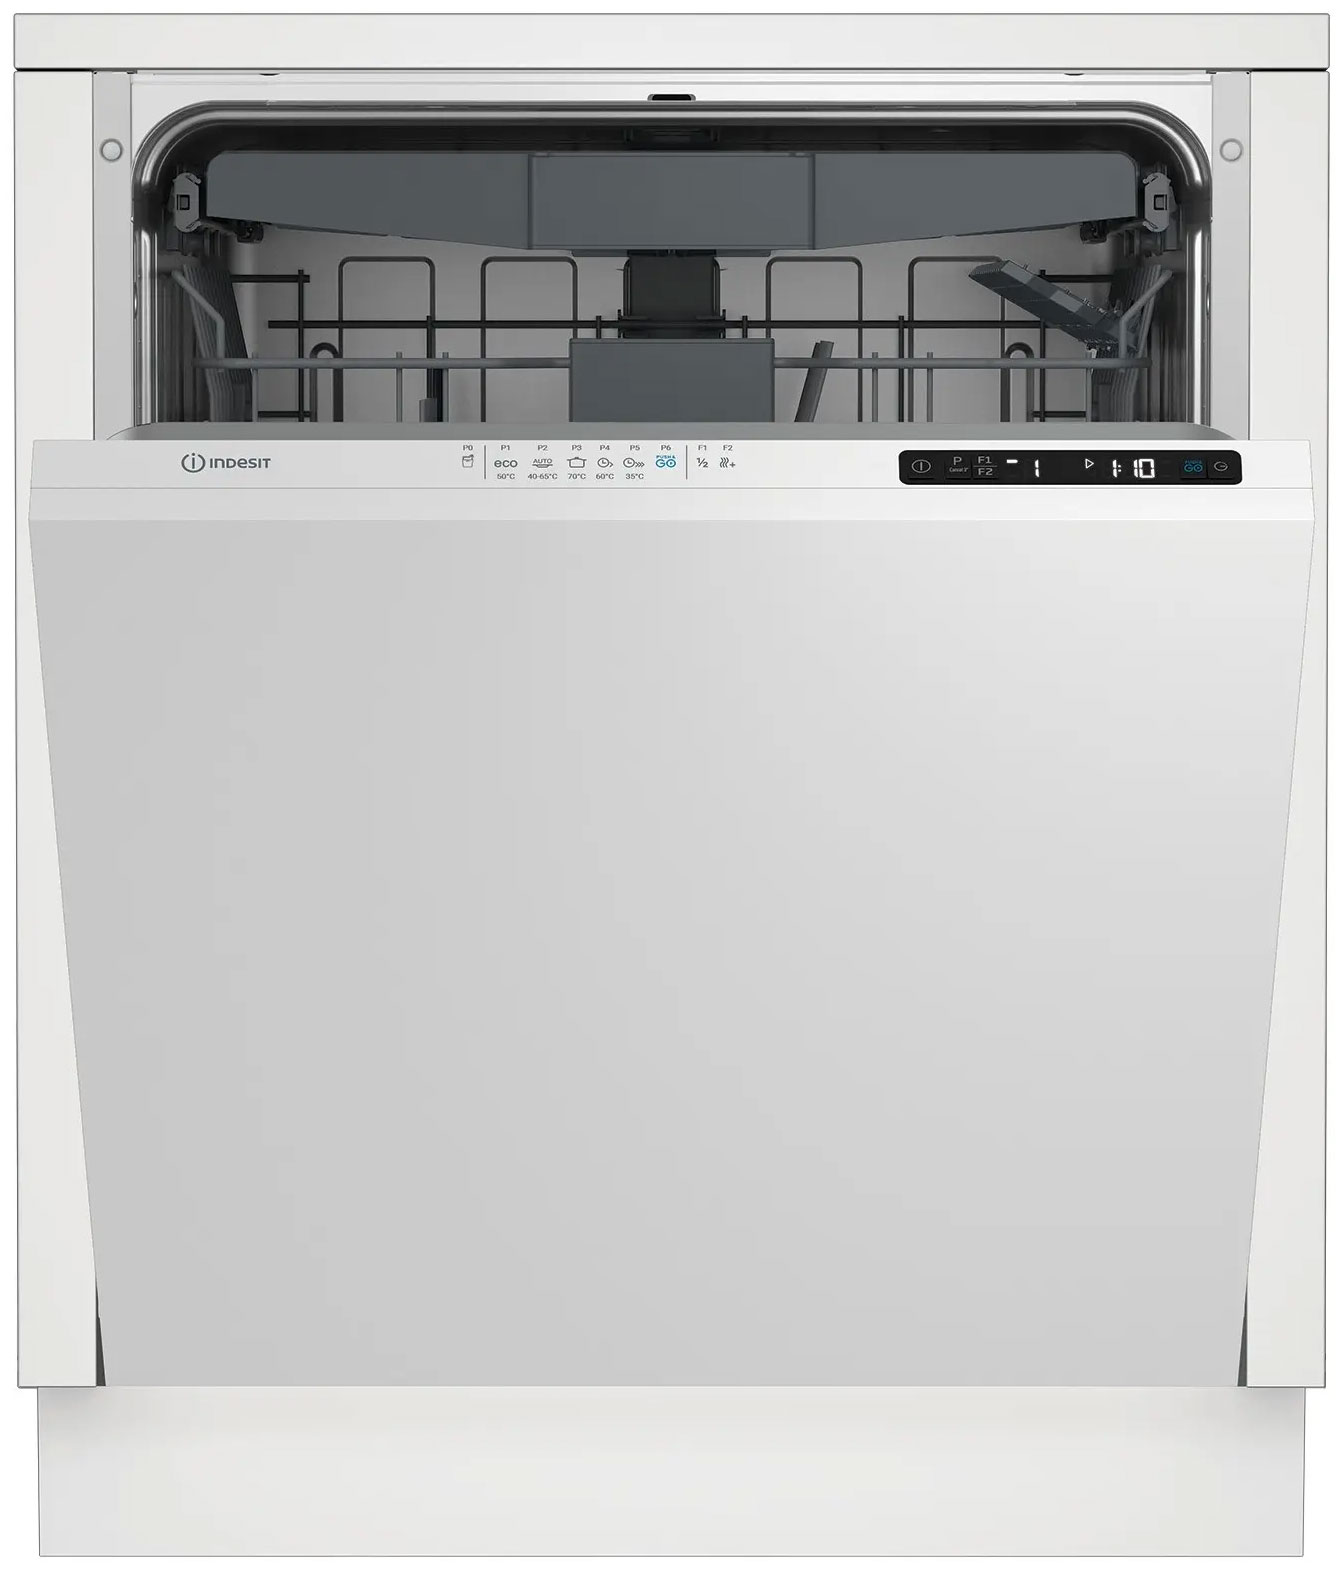 Встраиваемая посудомоечная машина Indesit DI 5C65 AED встраиваемая посудомоечная машина indesit di 5c65 aed